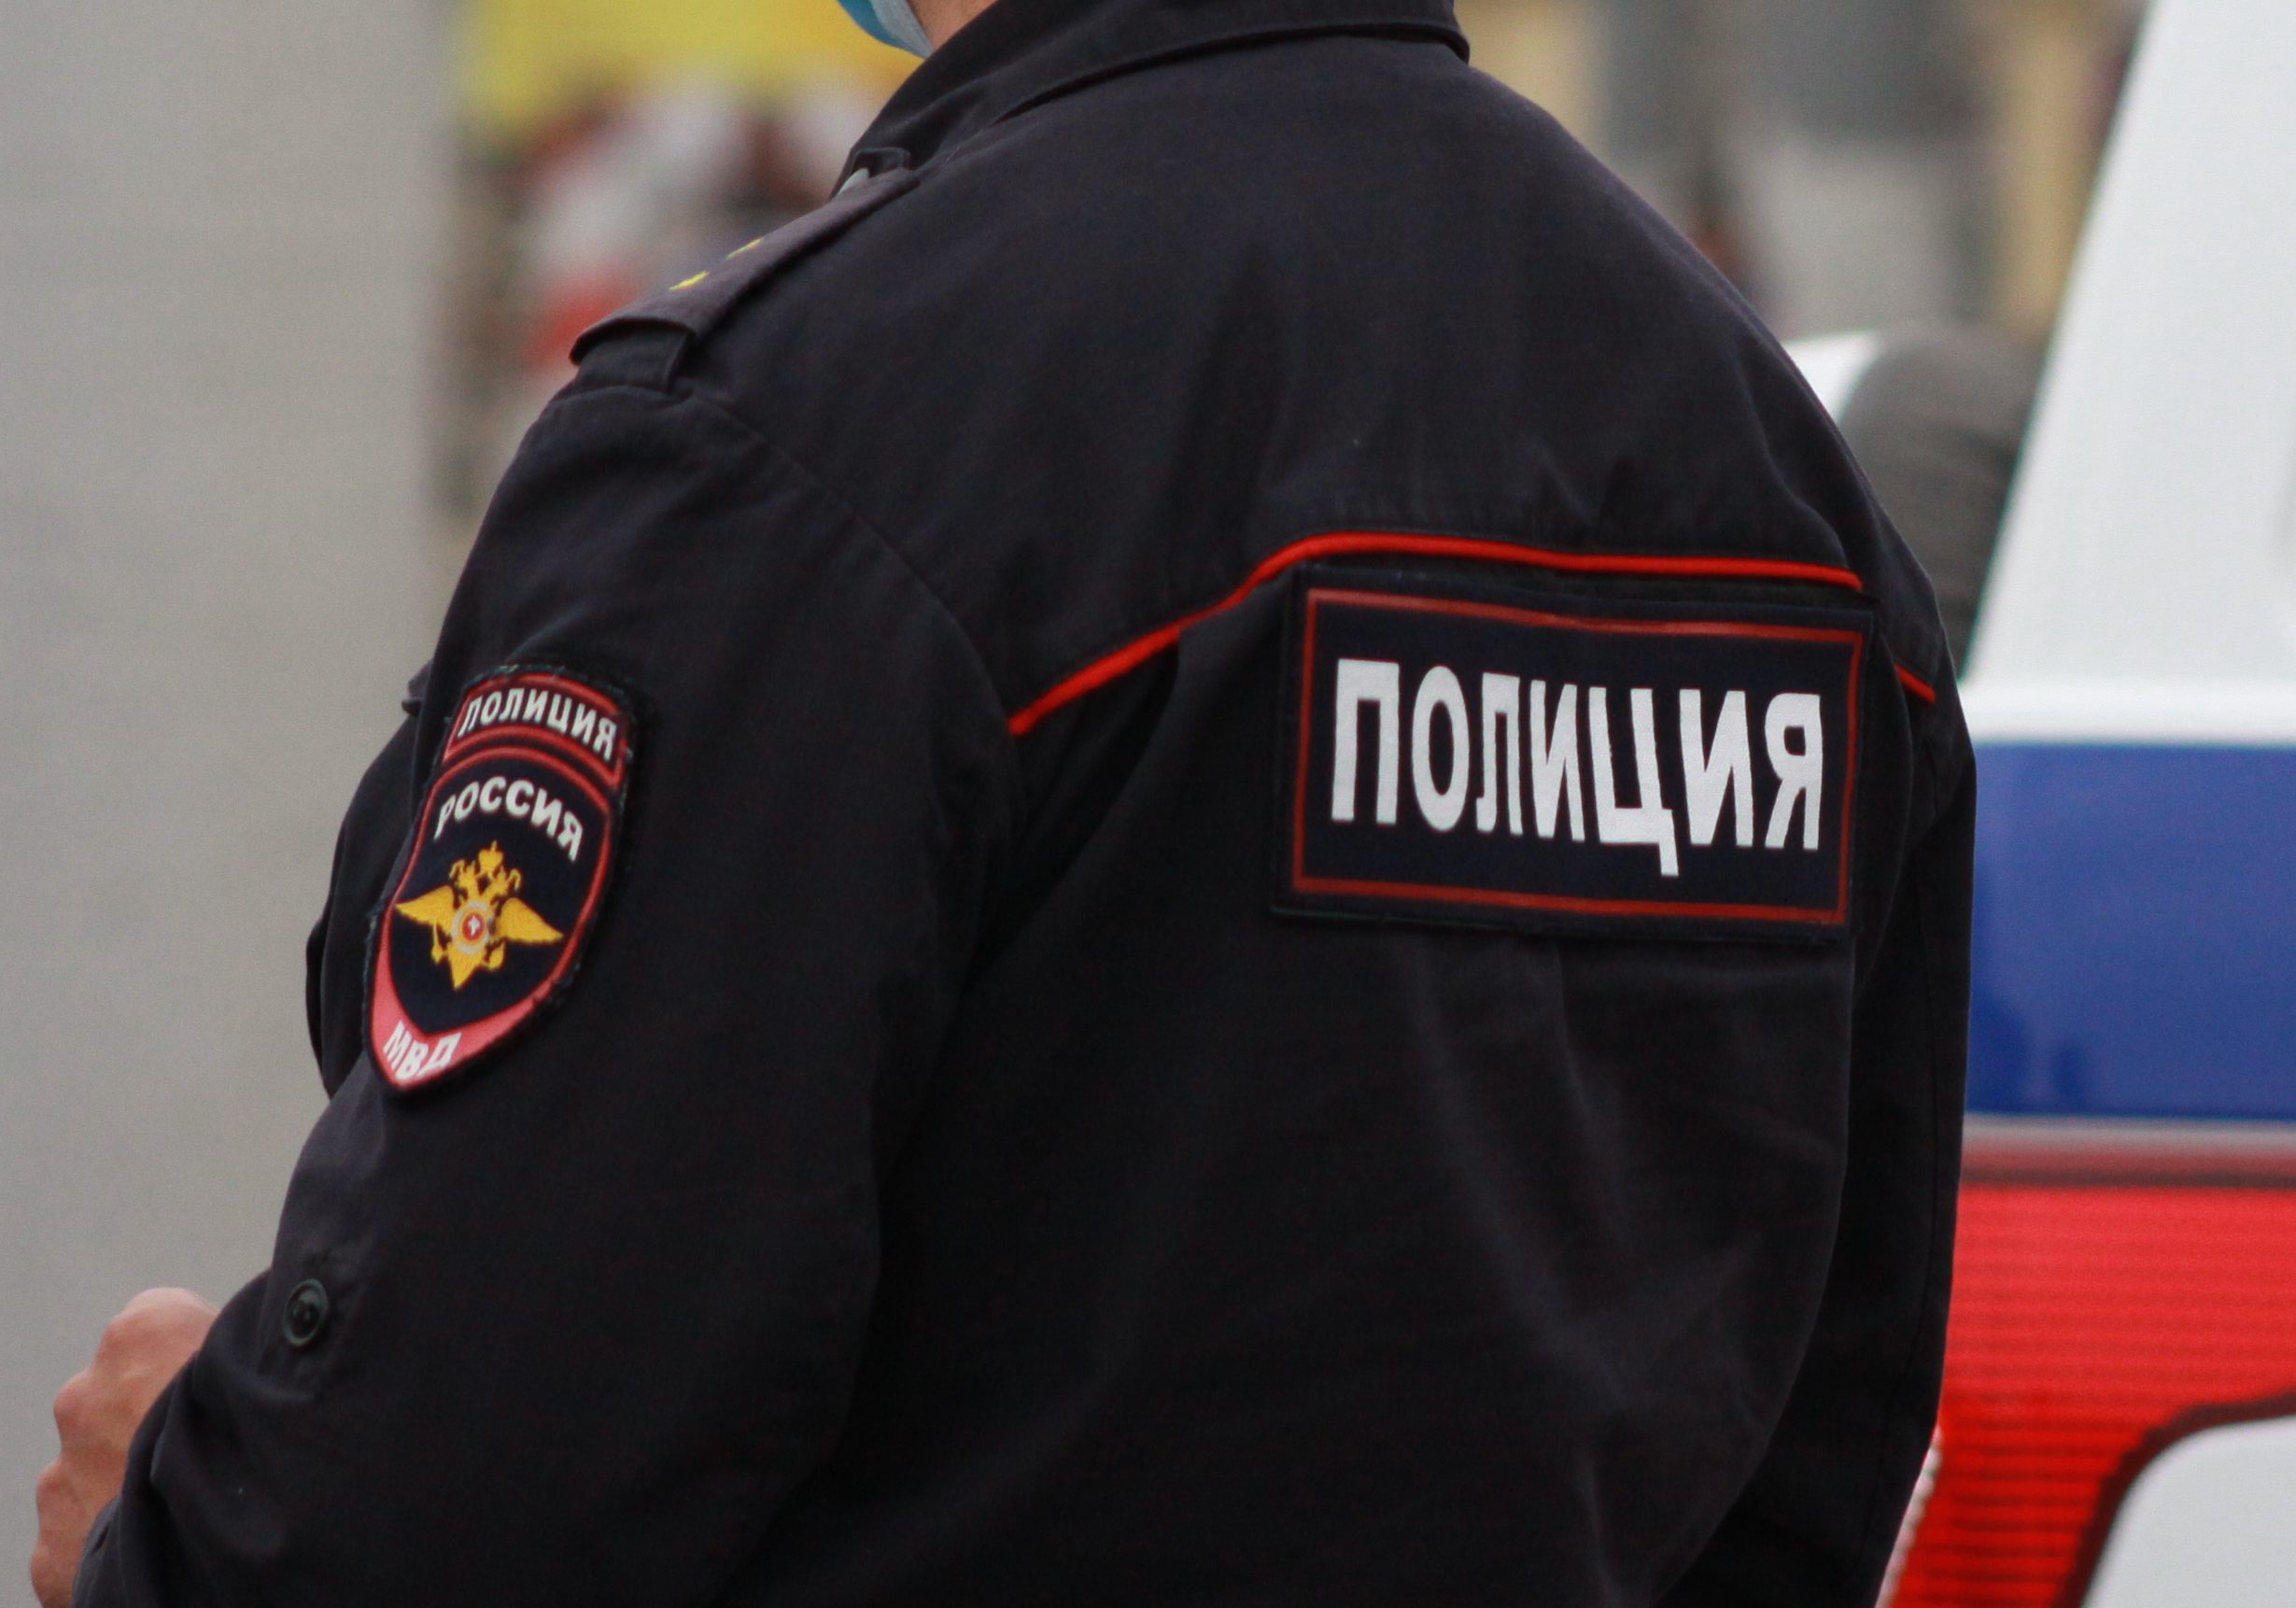 26-летняя тулячка отдала более 190 тыс. рублей лже-оператору